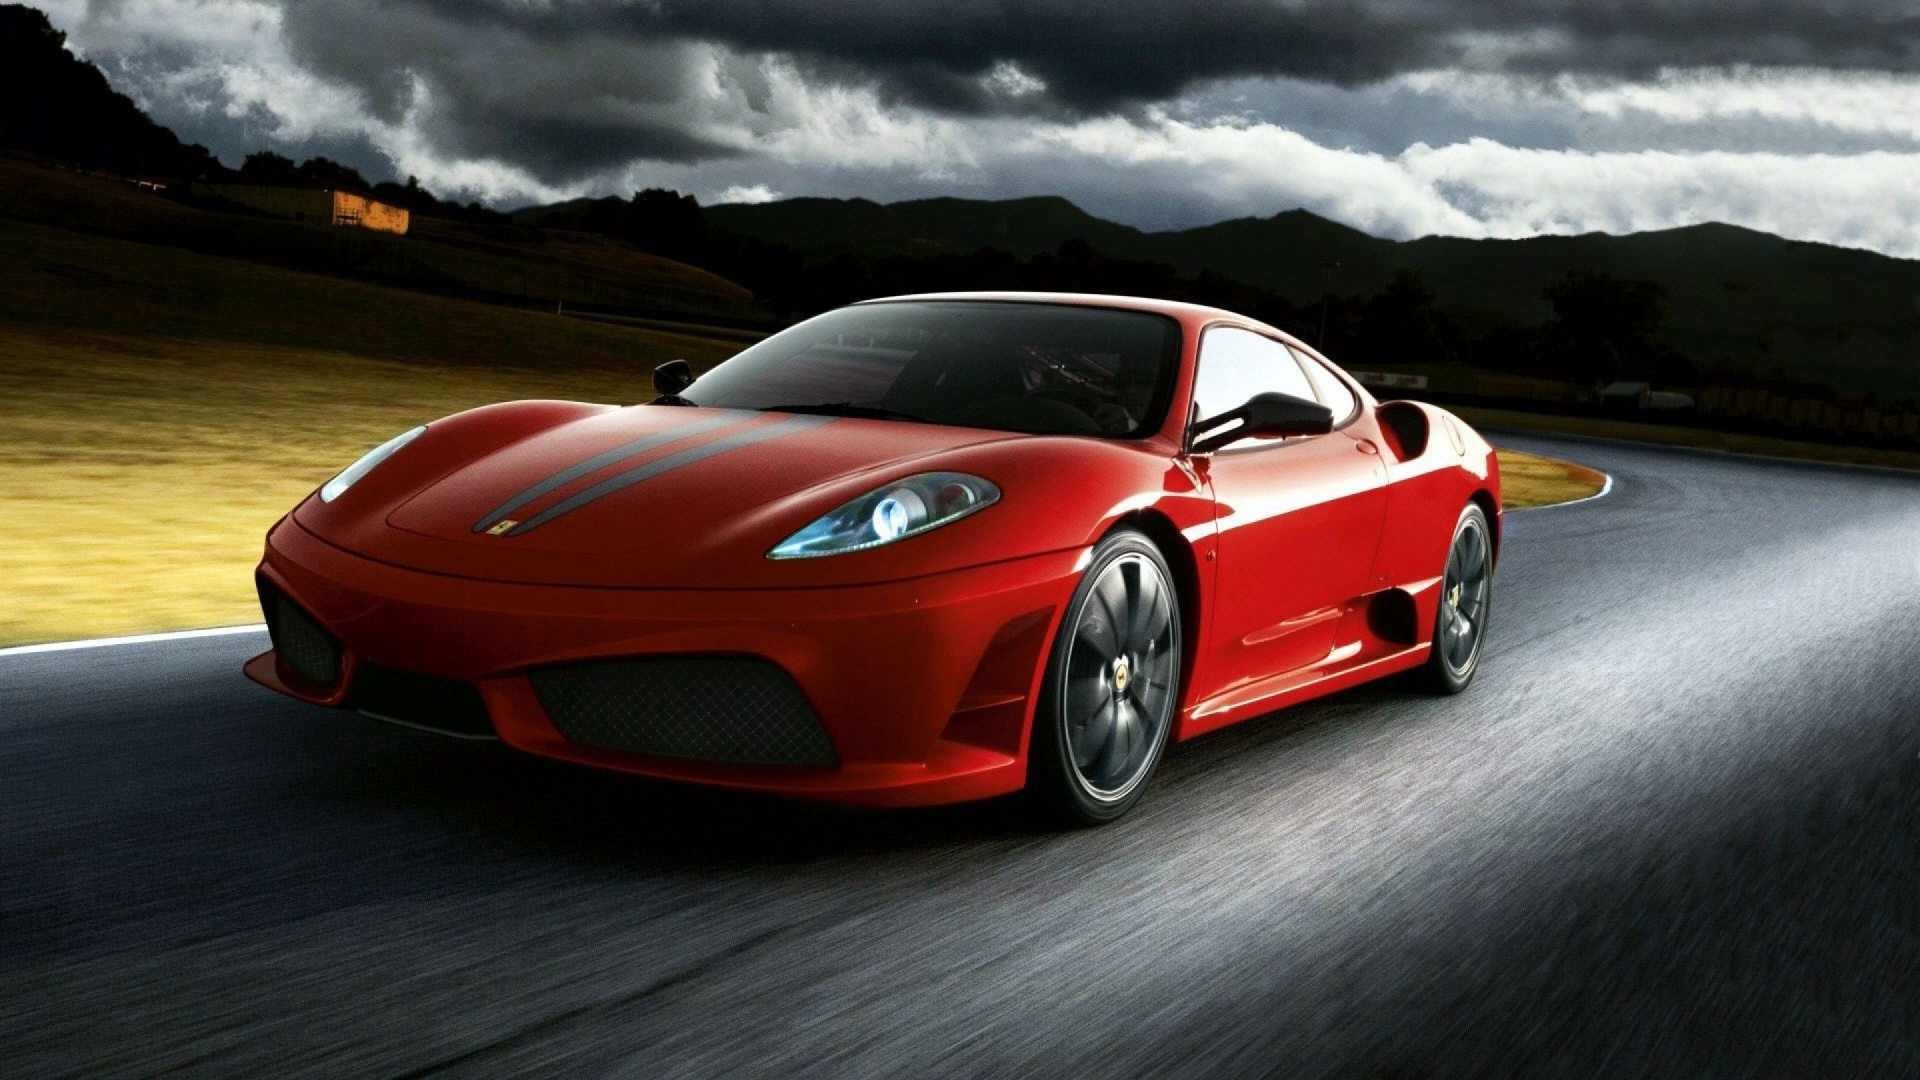 法拉利f430, Ferrari, 超级跑车, 法拉利599gto, 法拉利430红 壁纸 1920x1080 允许